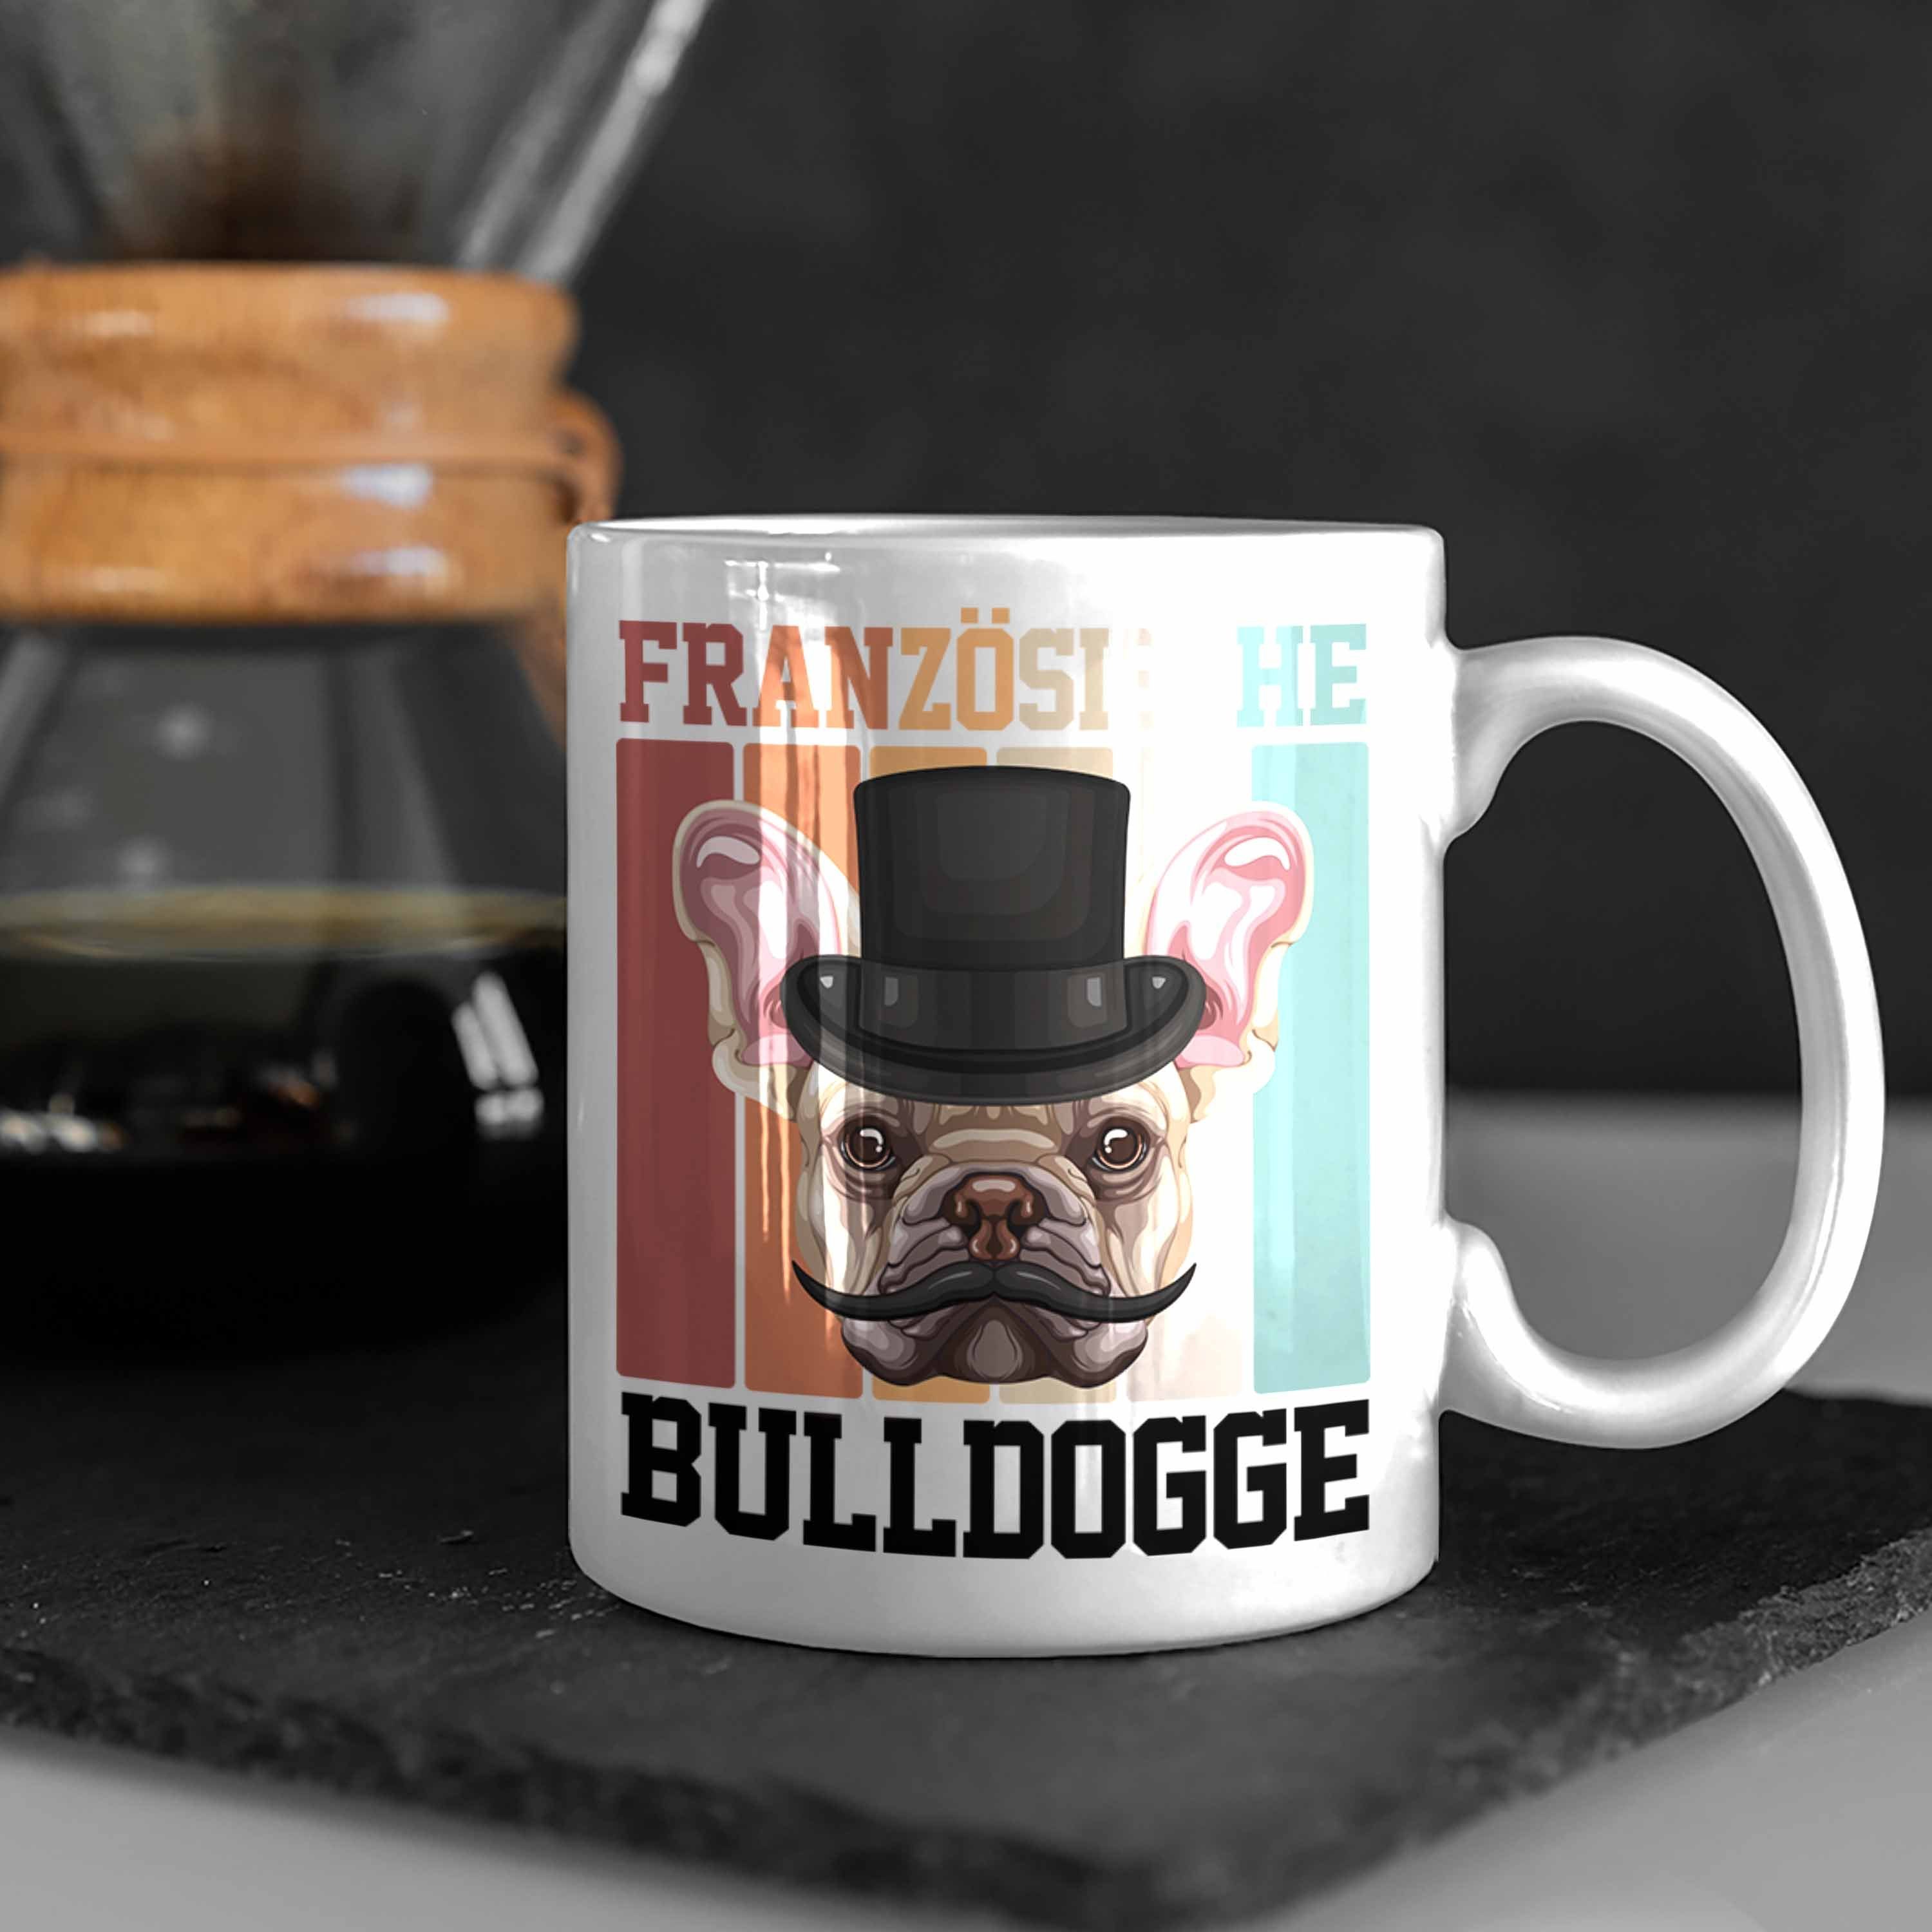 Trendation Lustiger Geschenk Weiss Tasse Besitzer Spruch Bulldogge Französische Geschen Tasse